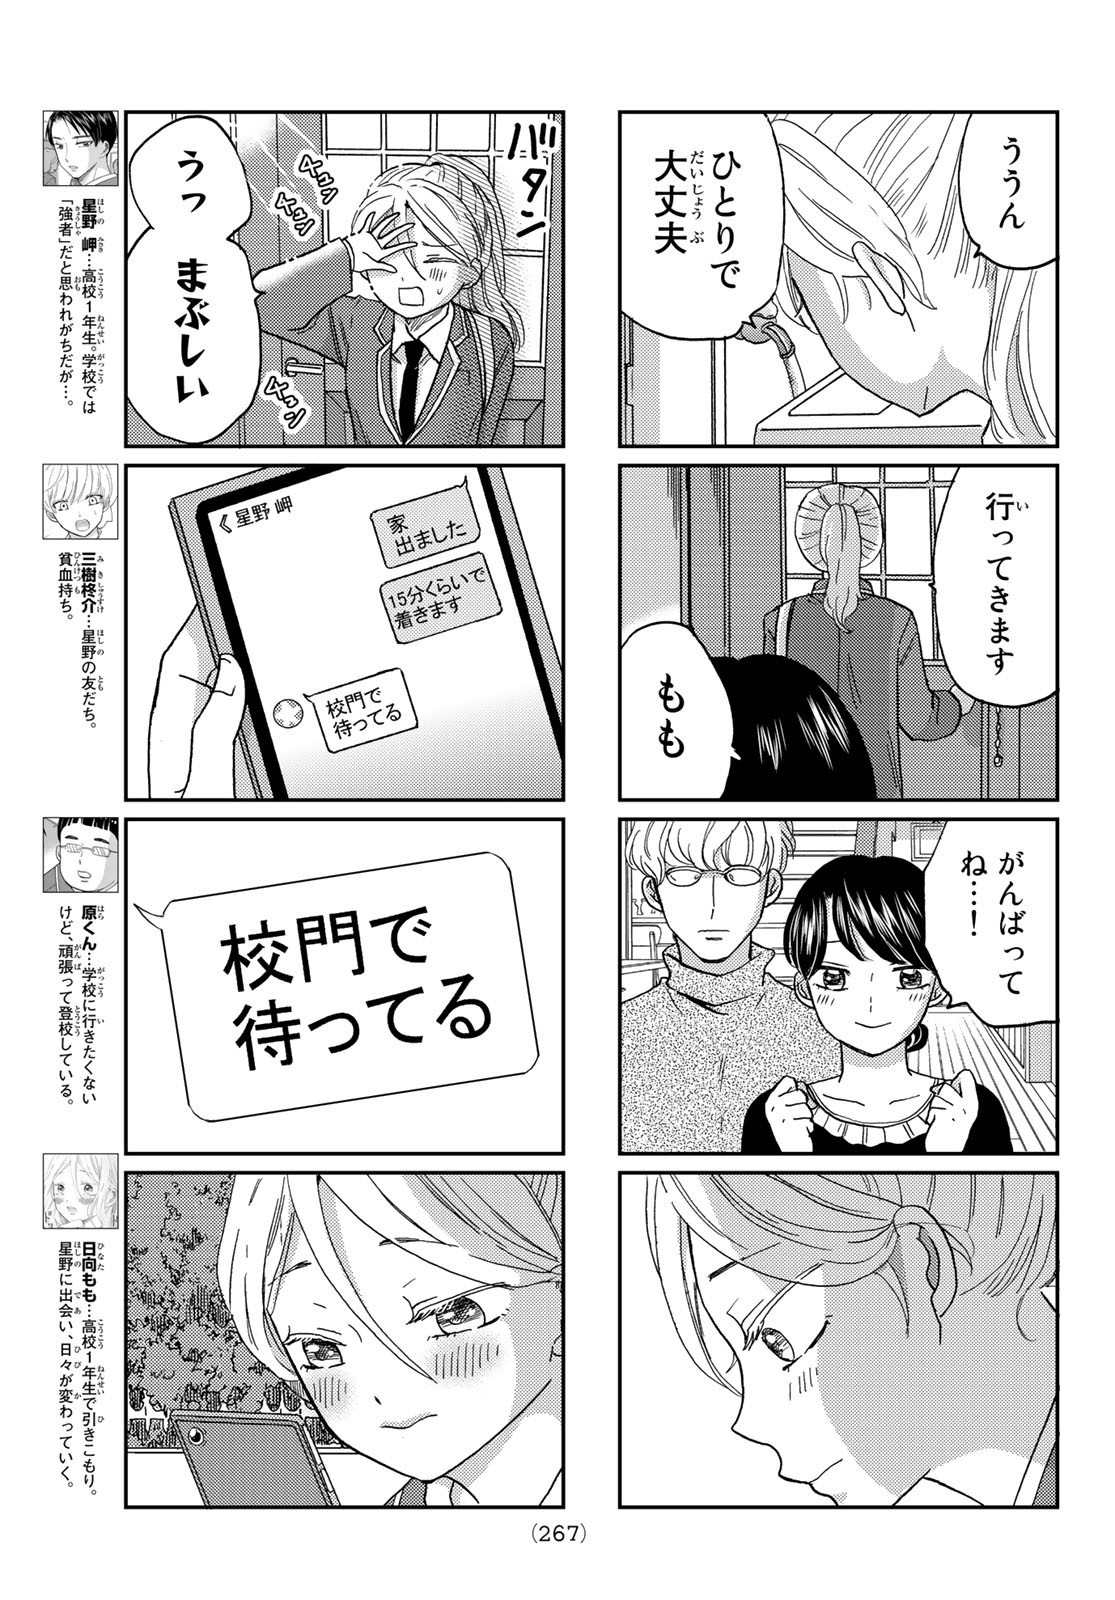 Hinata-san, Hoshino desu. - Chapter 017 - Page 3